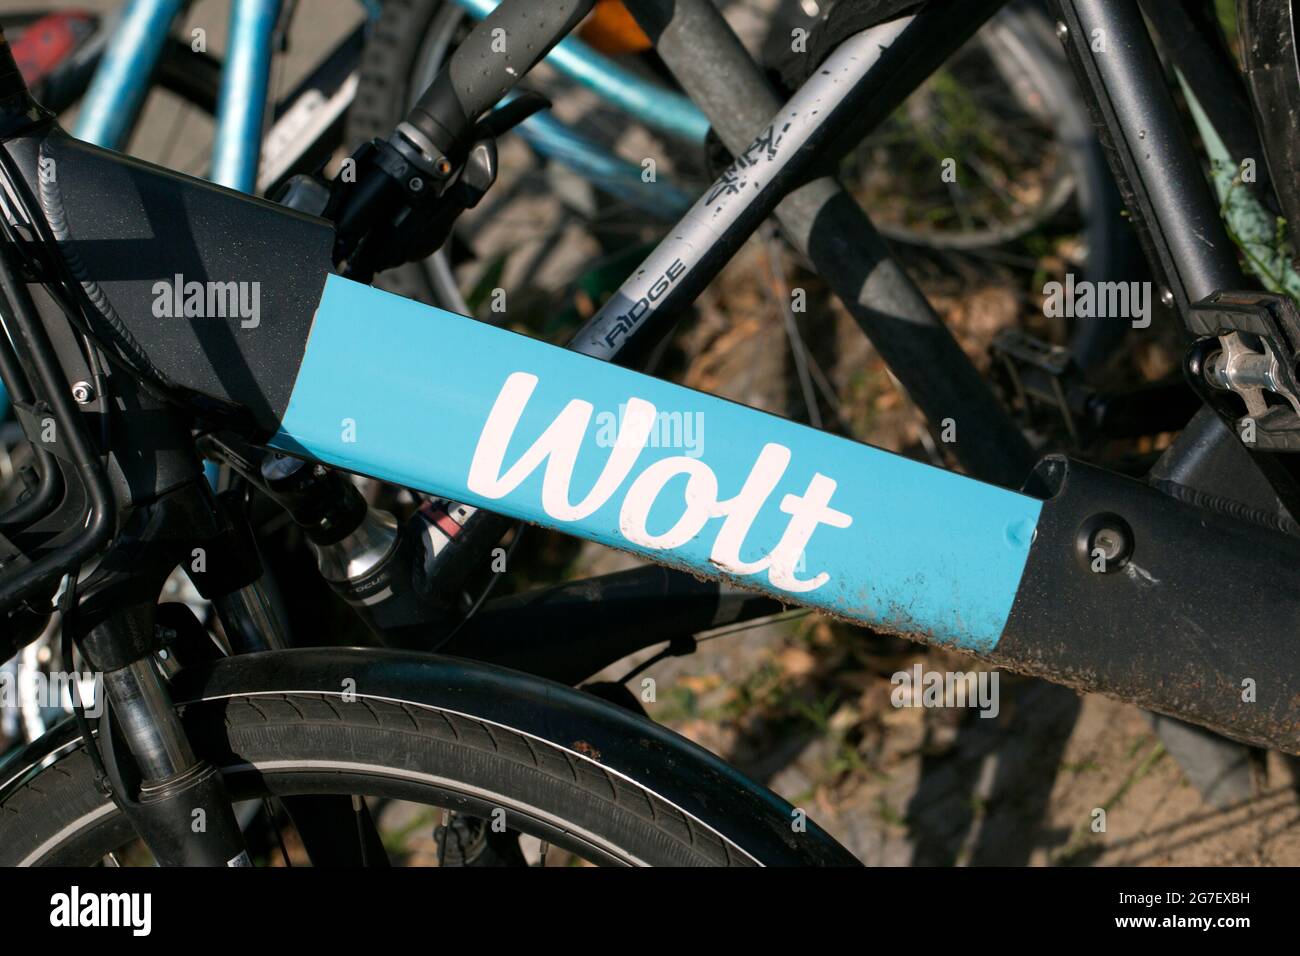 Bike of Wolt, Berlin, Germany Stock Photo